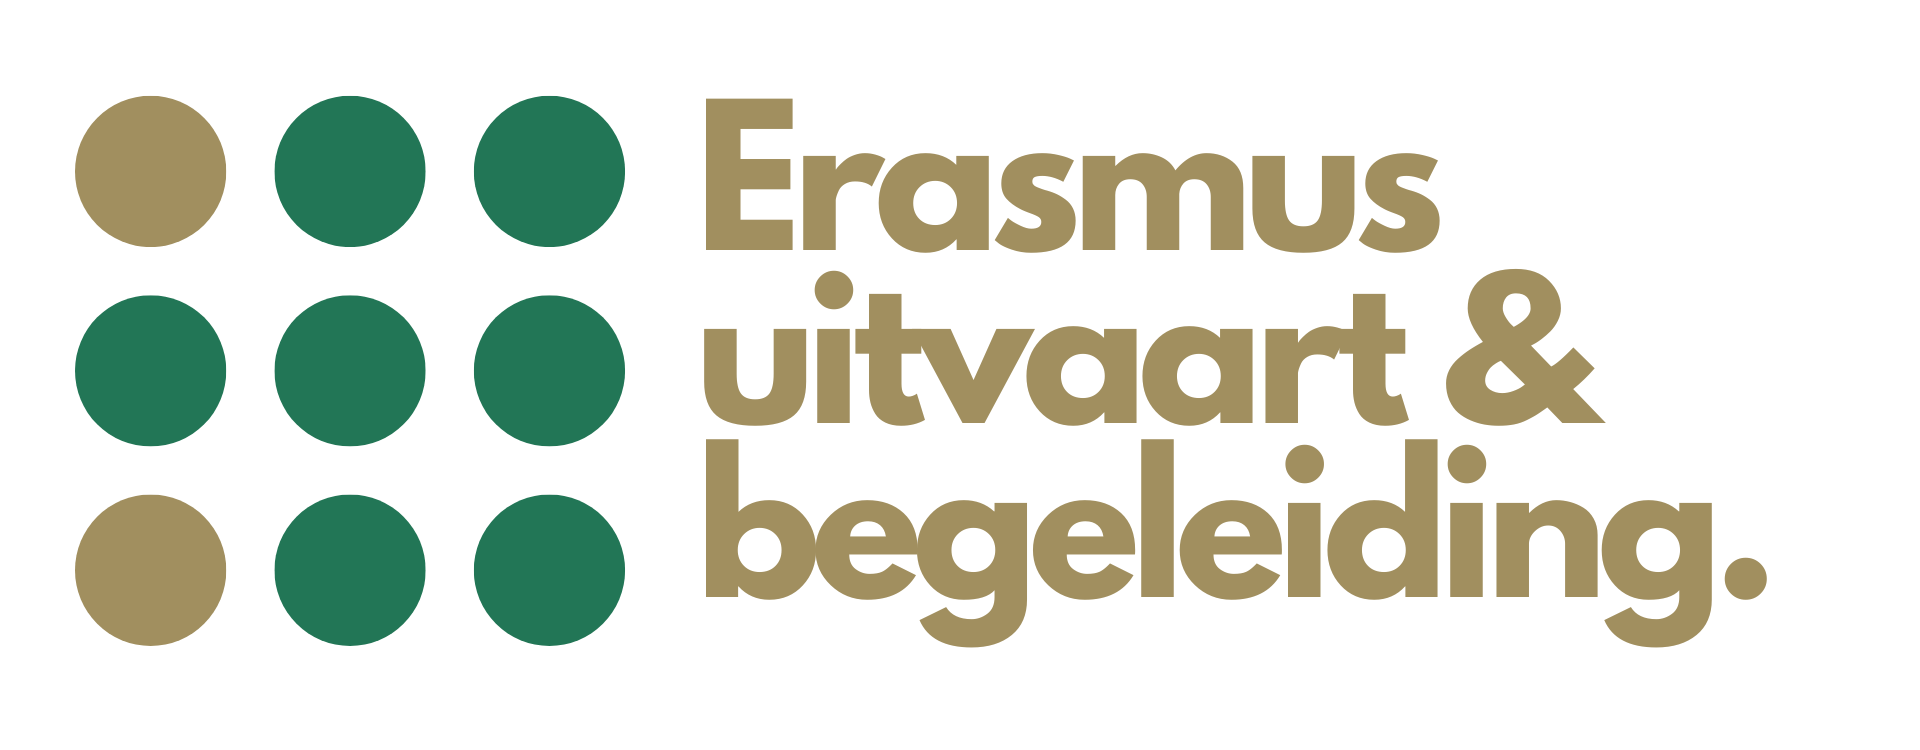 Erasmus uitvaart & begeleiding.